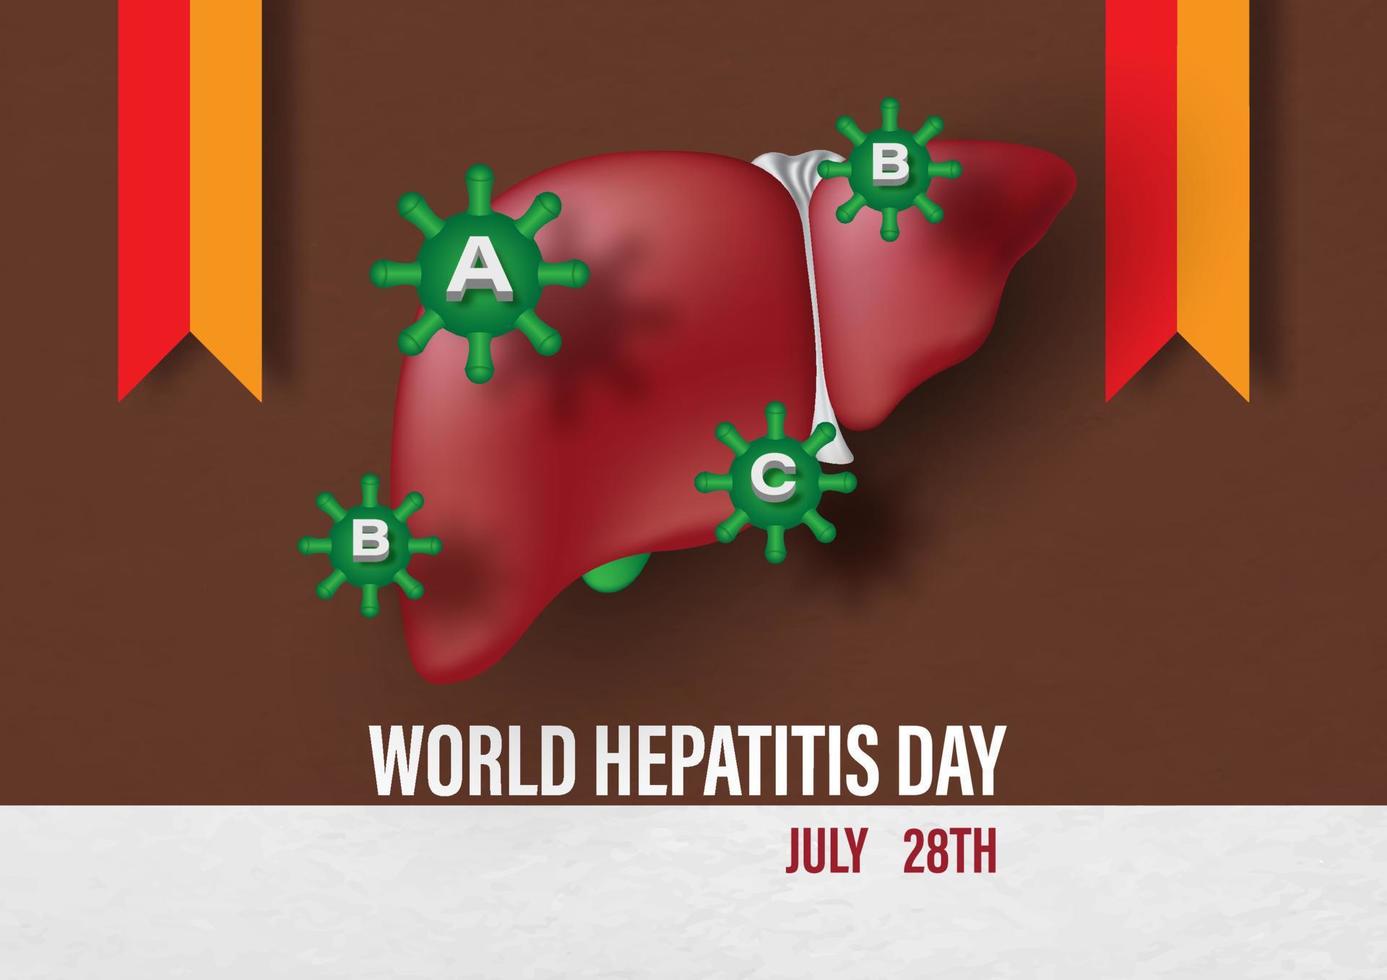 símbolo do vírus da hepatite no fígado humano com fitas de campanha e redação do dia mundial da hepatite isolado no fundo padrão de papel marrom e branco. vetor